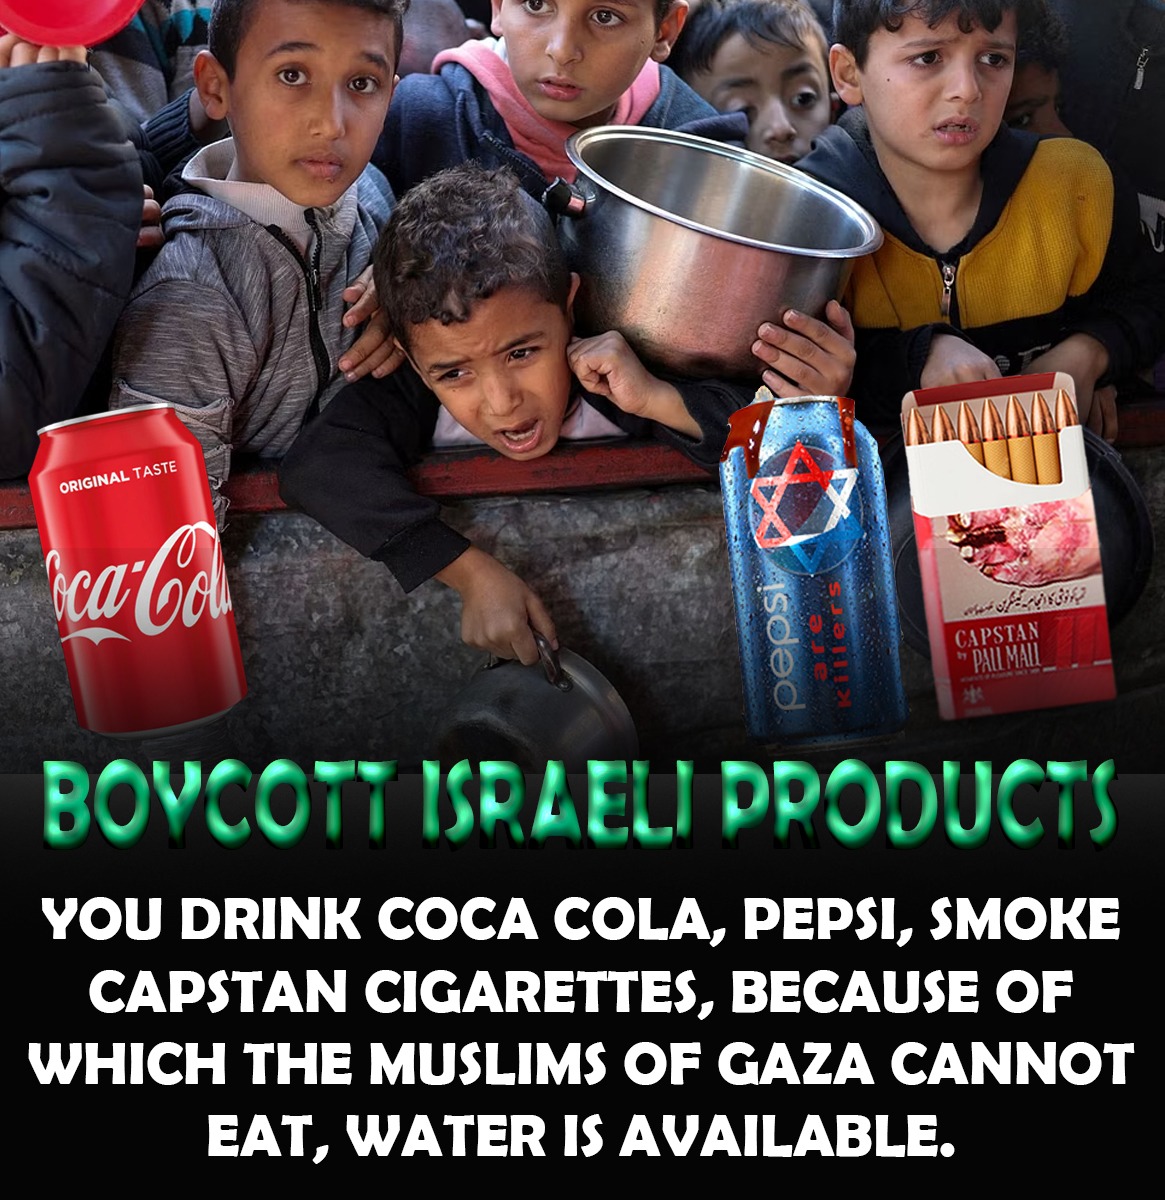 #فری_فلسطین
فلسطین کے مظلوم عوام کے خاطر اسرائیل کے مصنوعات کا بائکاٹ کرو